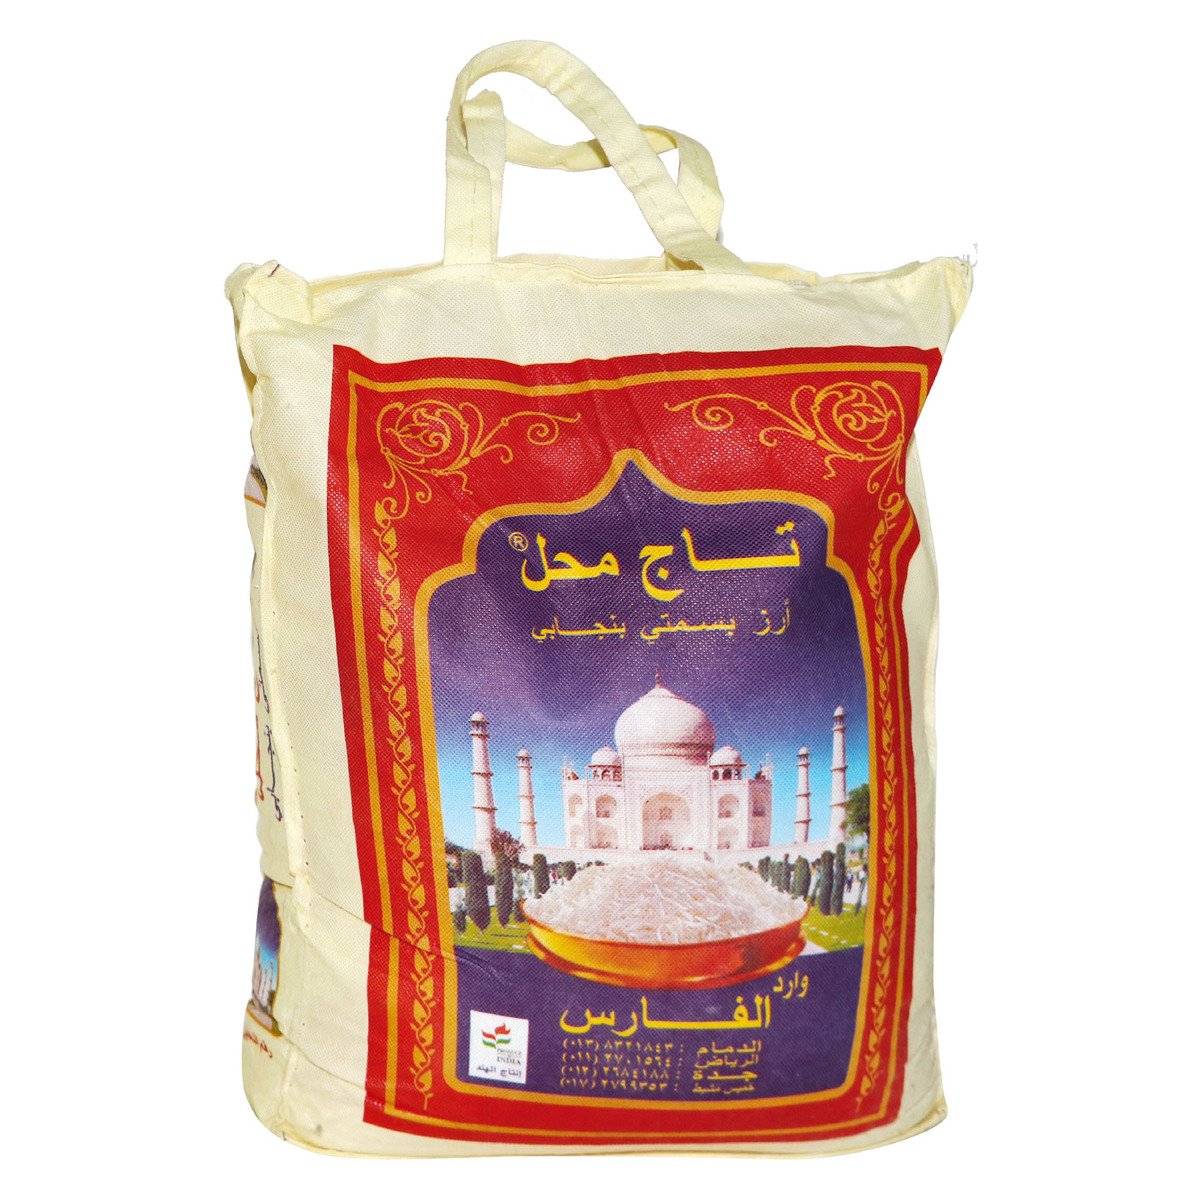 Taj Mahal White Basmati Rice 10kg